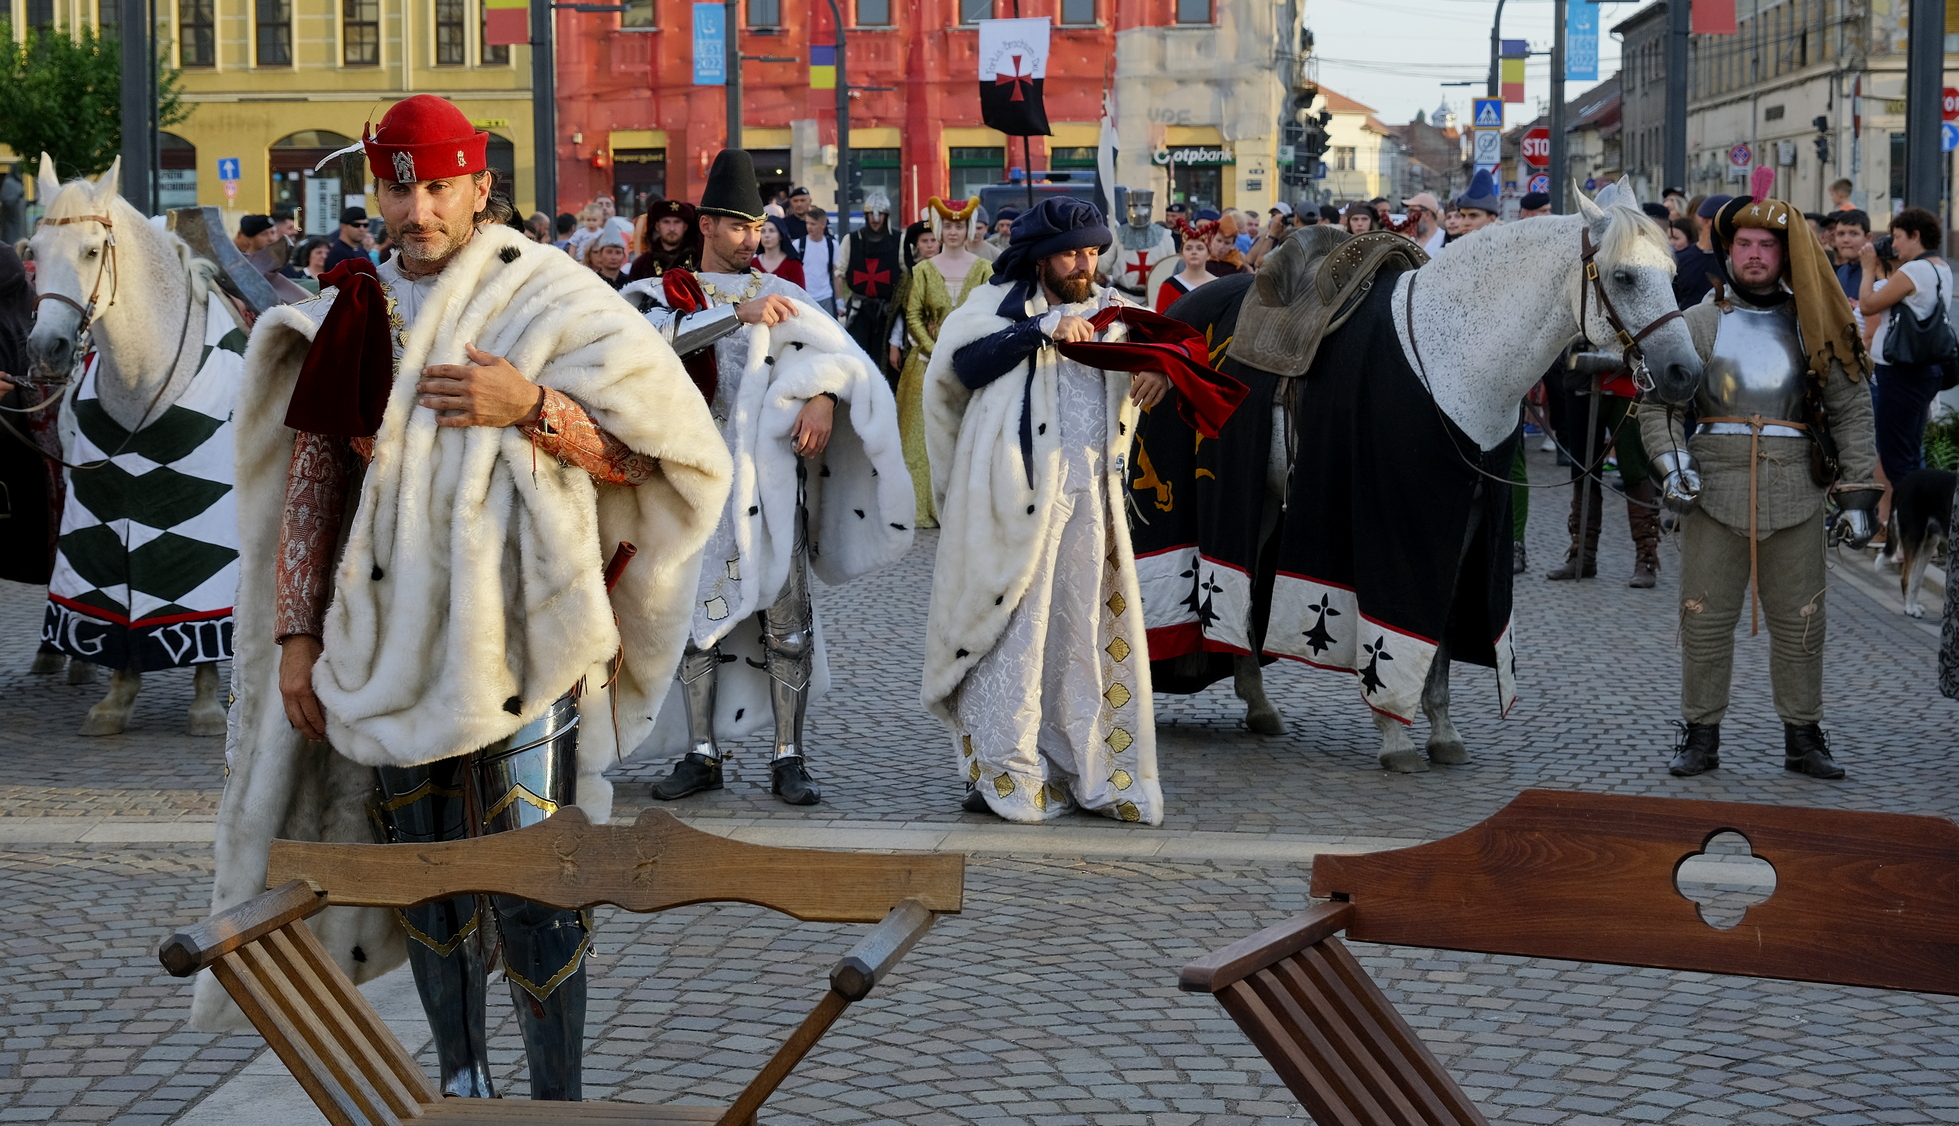 festivalul medieval oradea (44)